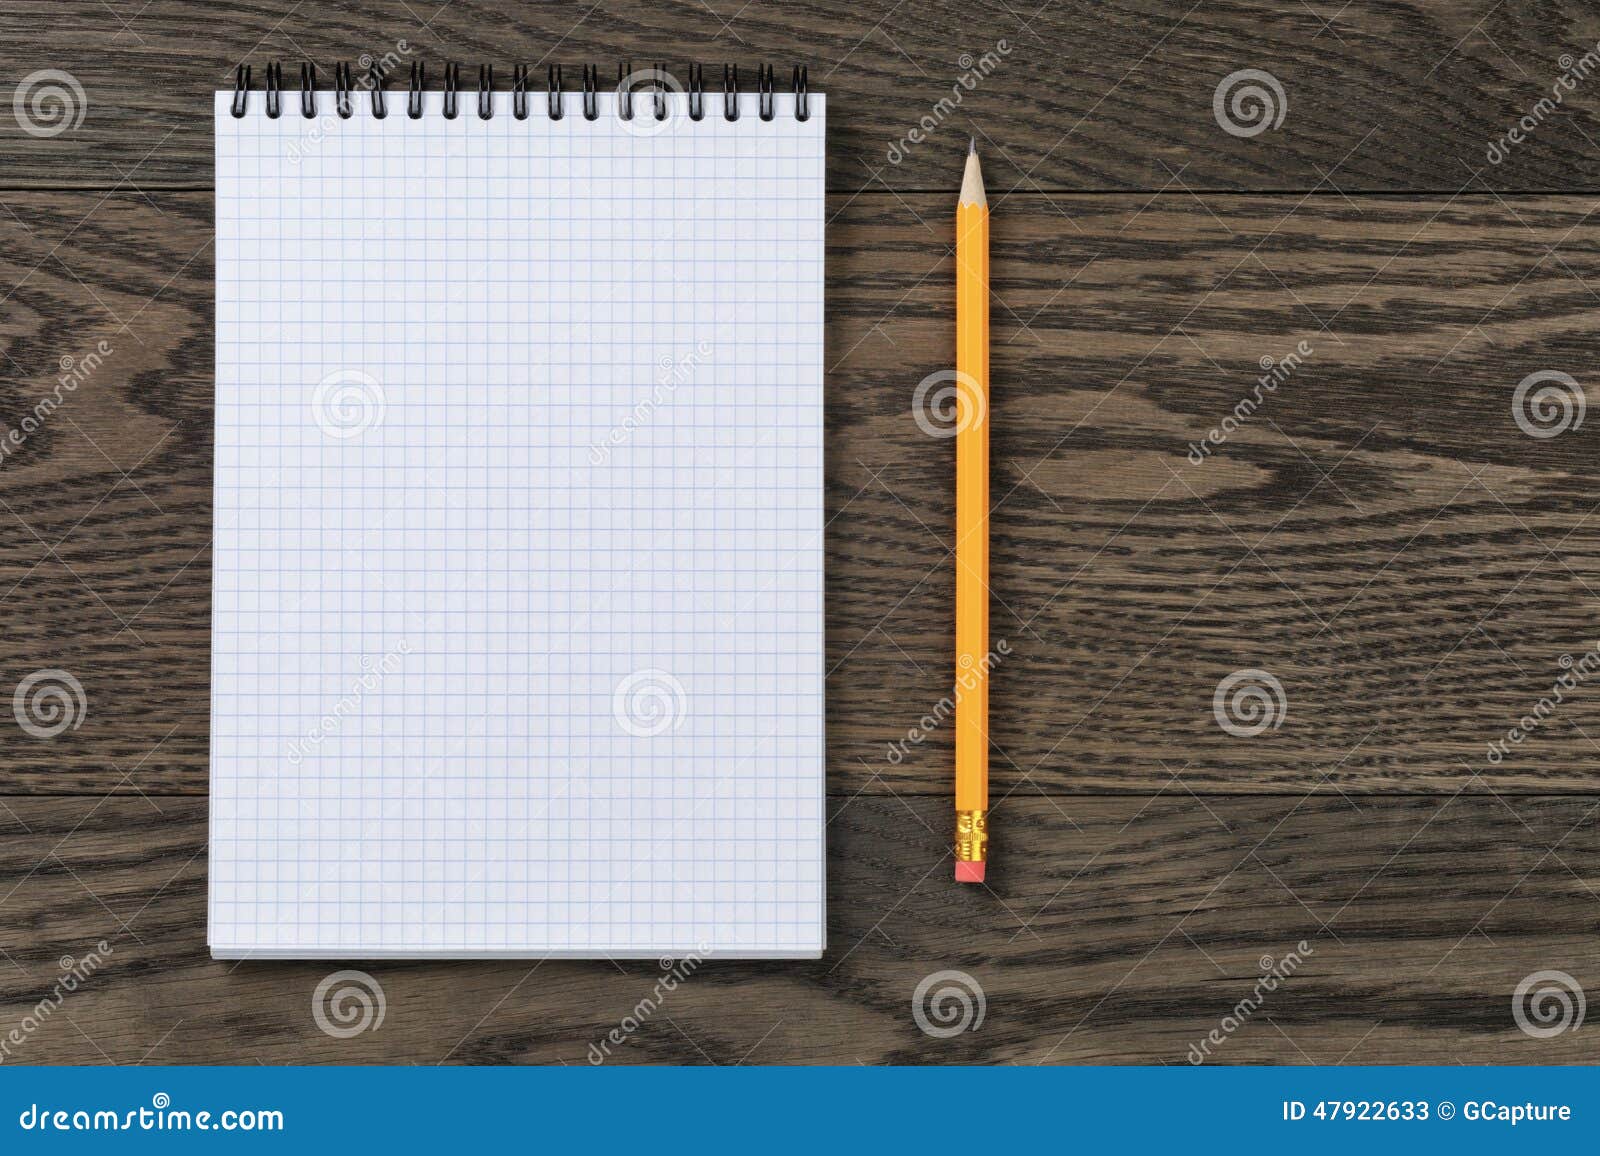 Abra El Cuaderno Para Escribir O Dibujar En La Tabla De Roble Imagen de  archivo - Imagen de mensaje, bosquejo: 47922633